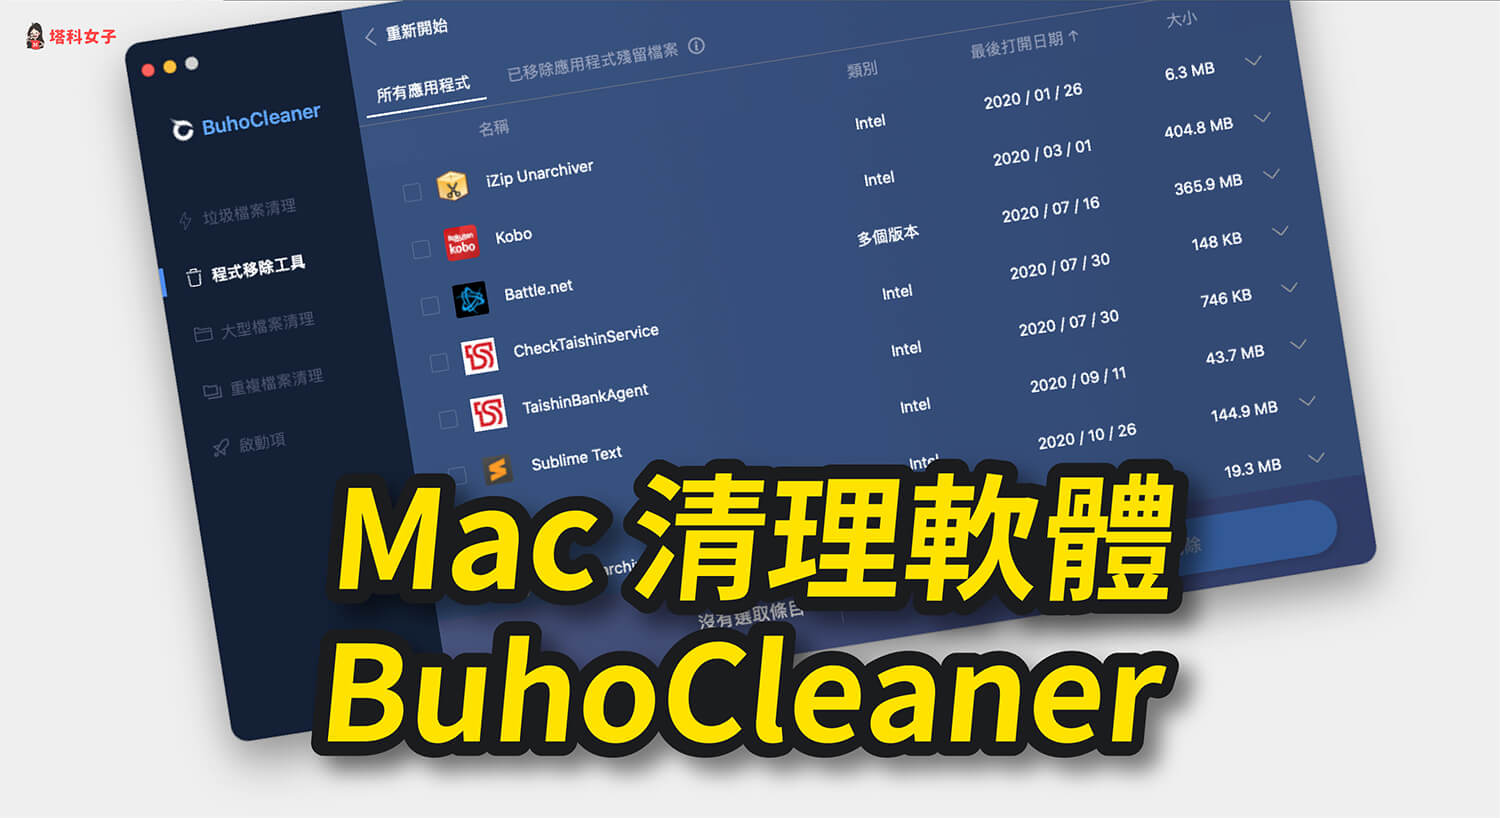 Mac 容量不夠、儲存空間已滿？教你用 BuhoCleaner 快速清理並釋放空間！